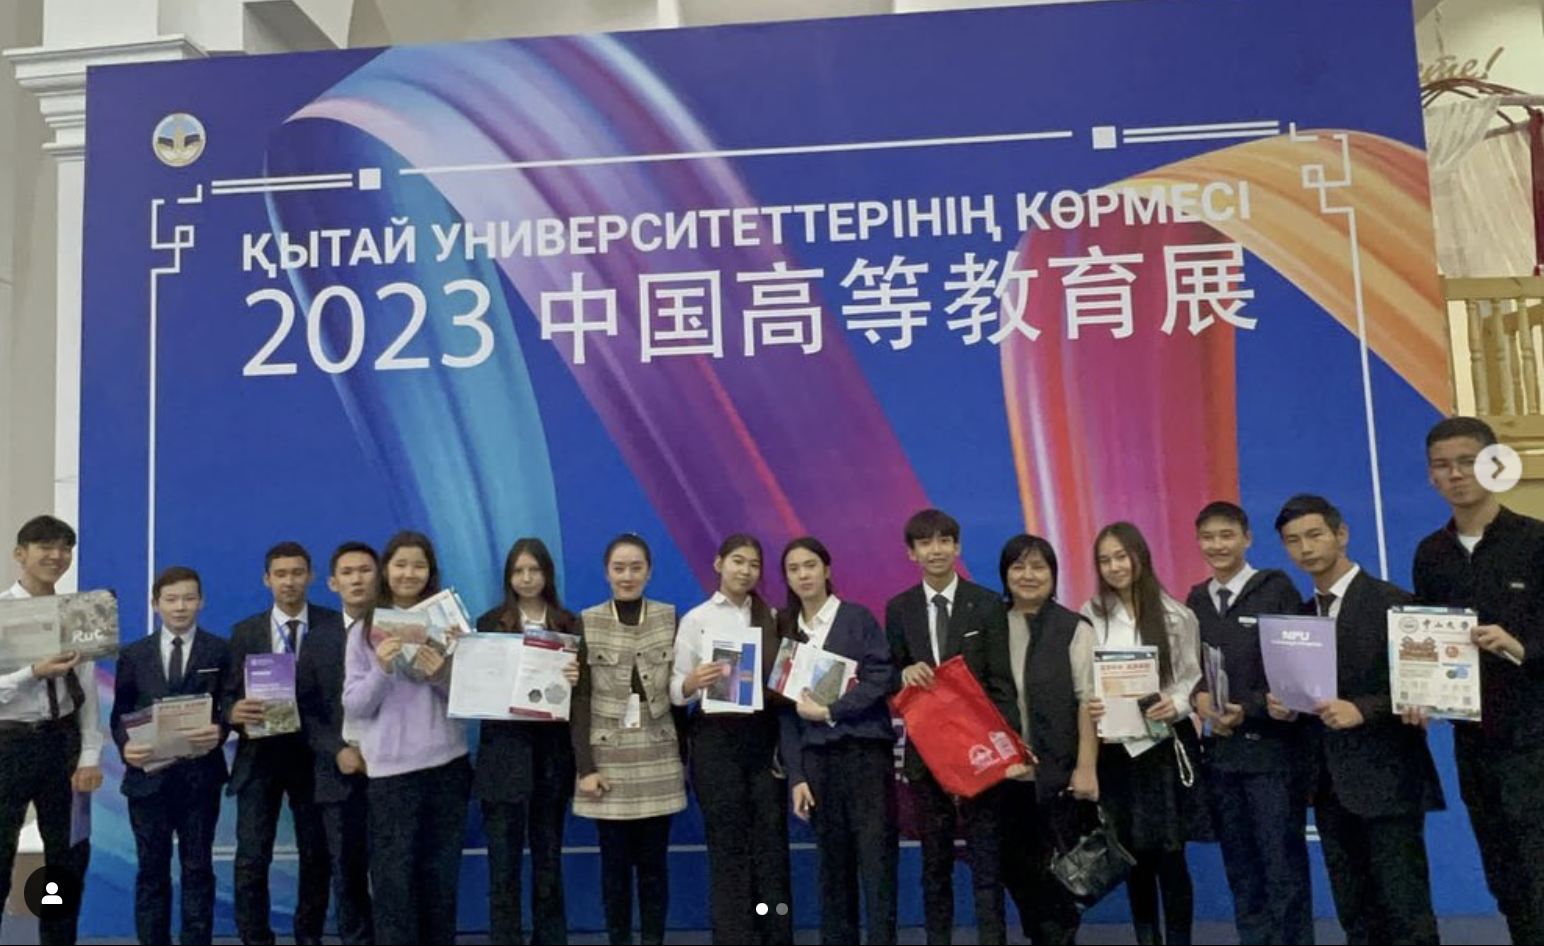 Бүгін ҚазҰУ Әл-Фараби кітапханасында Қытай Халық Республикасының 44 жоғары оқу орындарының көрмесі өтті.